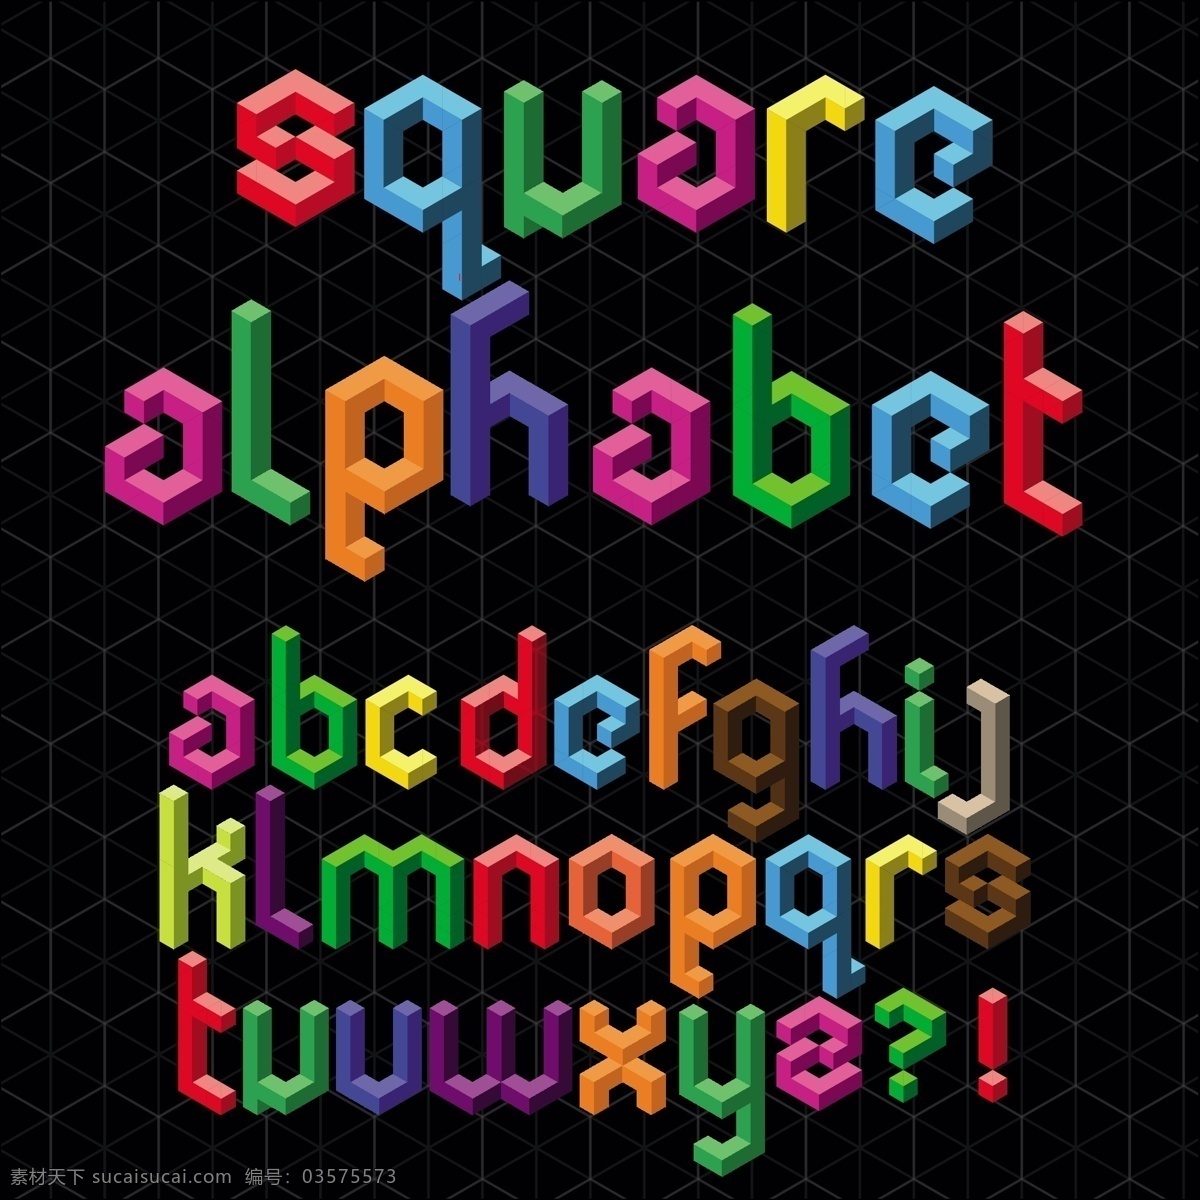 三维 立体 字母 符号 矢量 标点符号 三维立体 英文字母 字母符号 方块字体 矢量图 其他矢量图